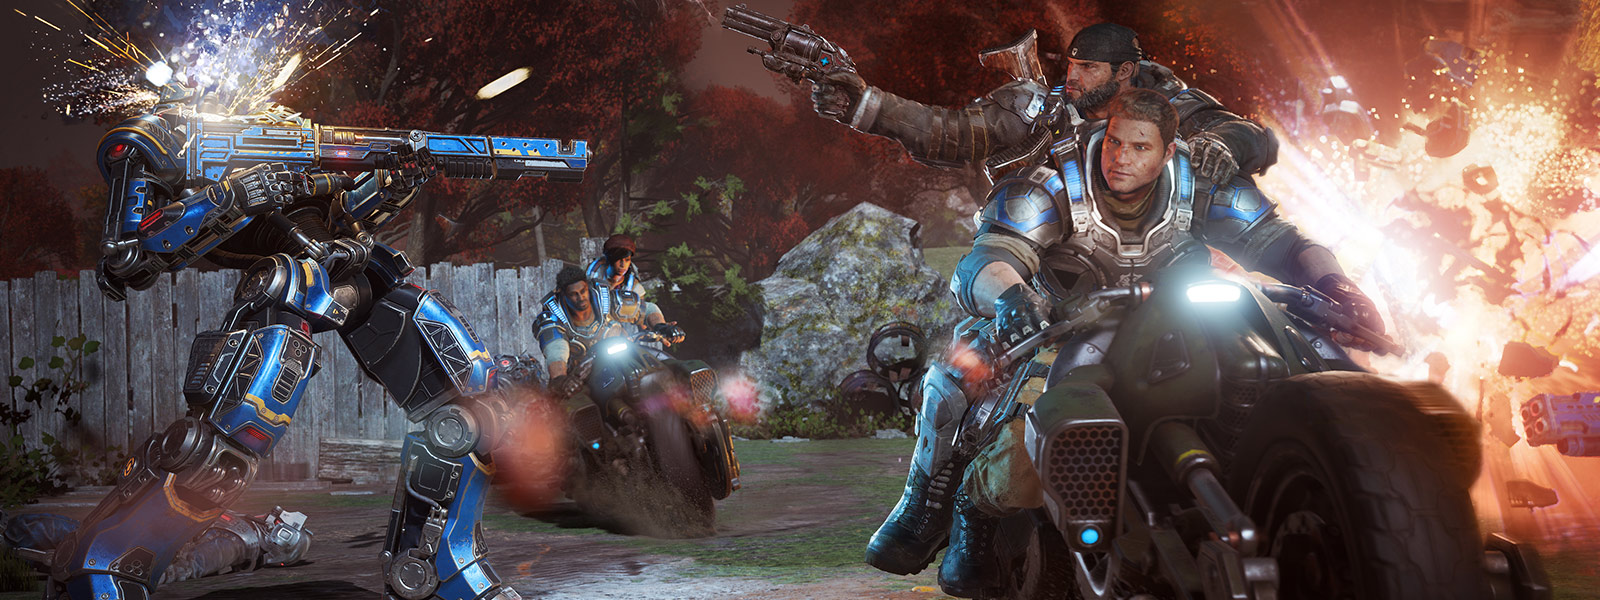 JD Fenix en zijn vrienden schieten en rijden op motoren tijdens een gevecht uit het spel Gears of War 4